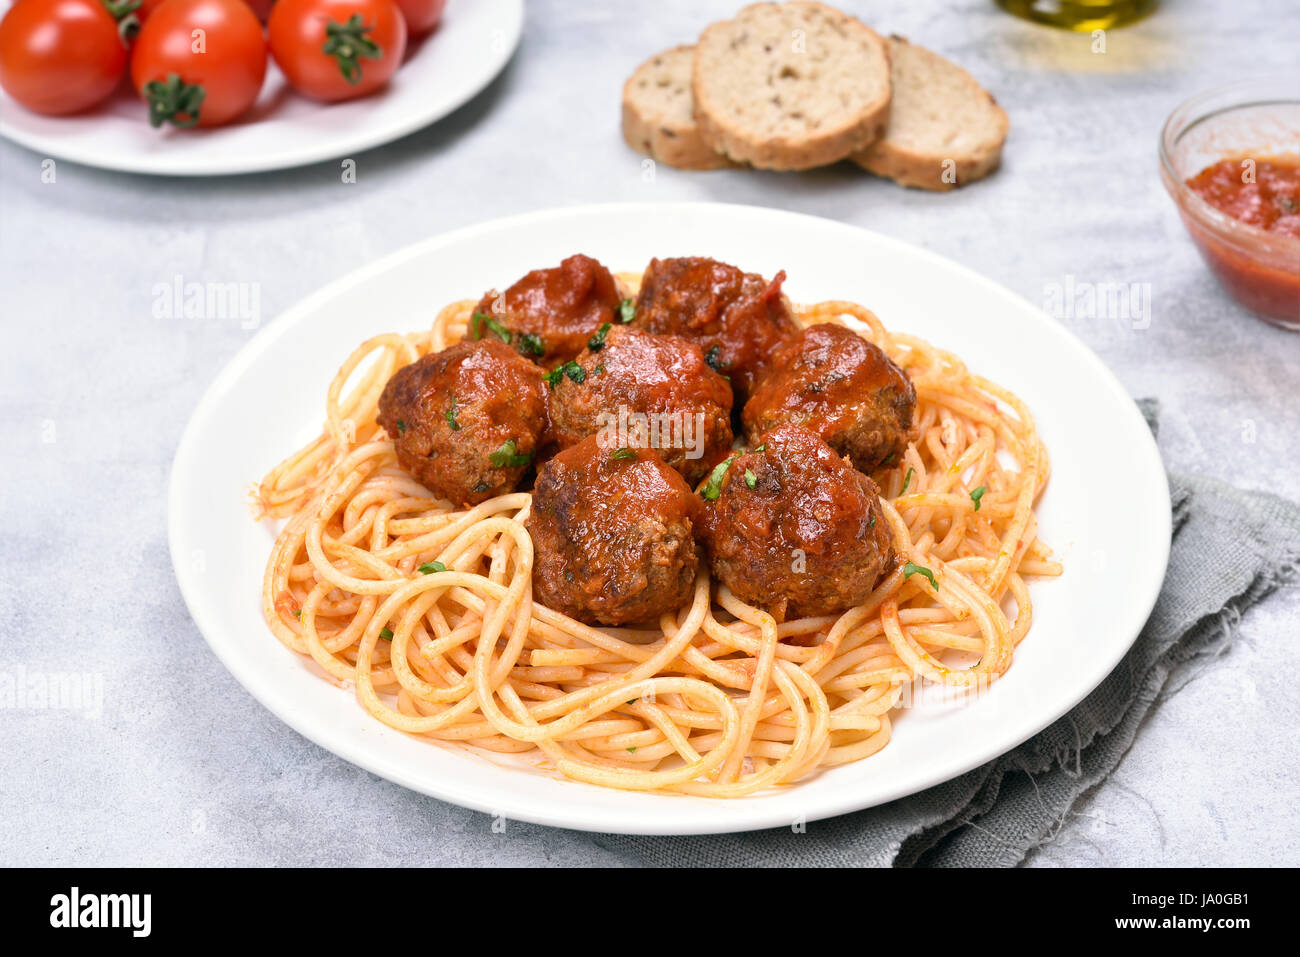 Cena con le polpette di carne in salsa di pomodoro e gli spaghetti, vista ravvicinata Foto Stock